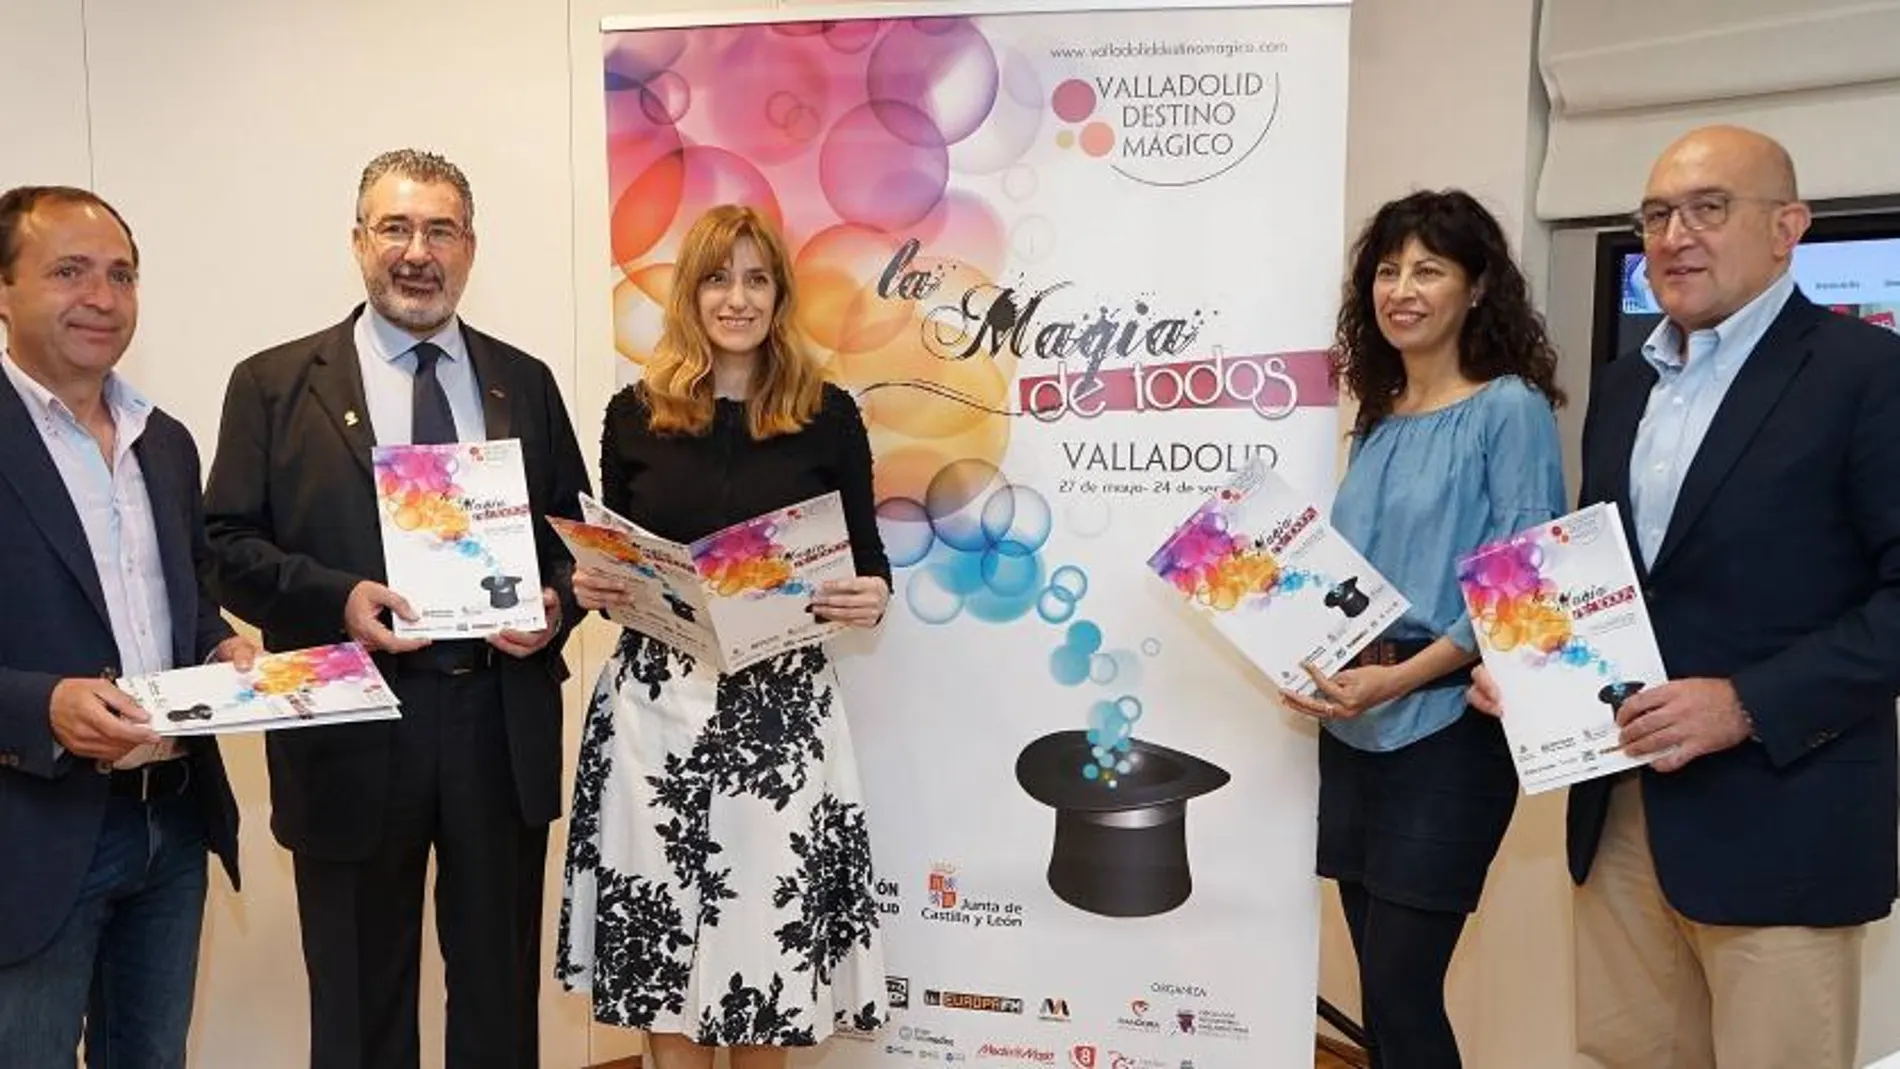 Presentación del programa «Valladolid, destino mágico» con la presencia de Ana Redondo, Jesús Julio Carnero y Mar Sancho, entre otros